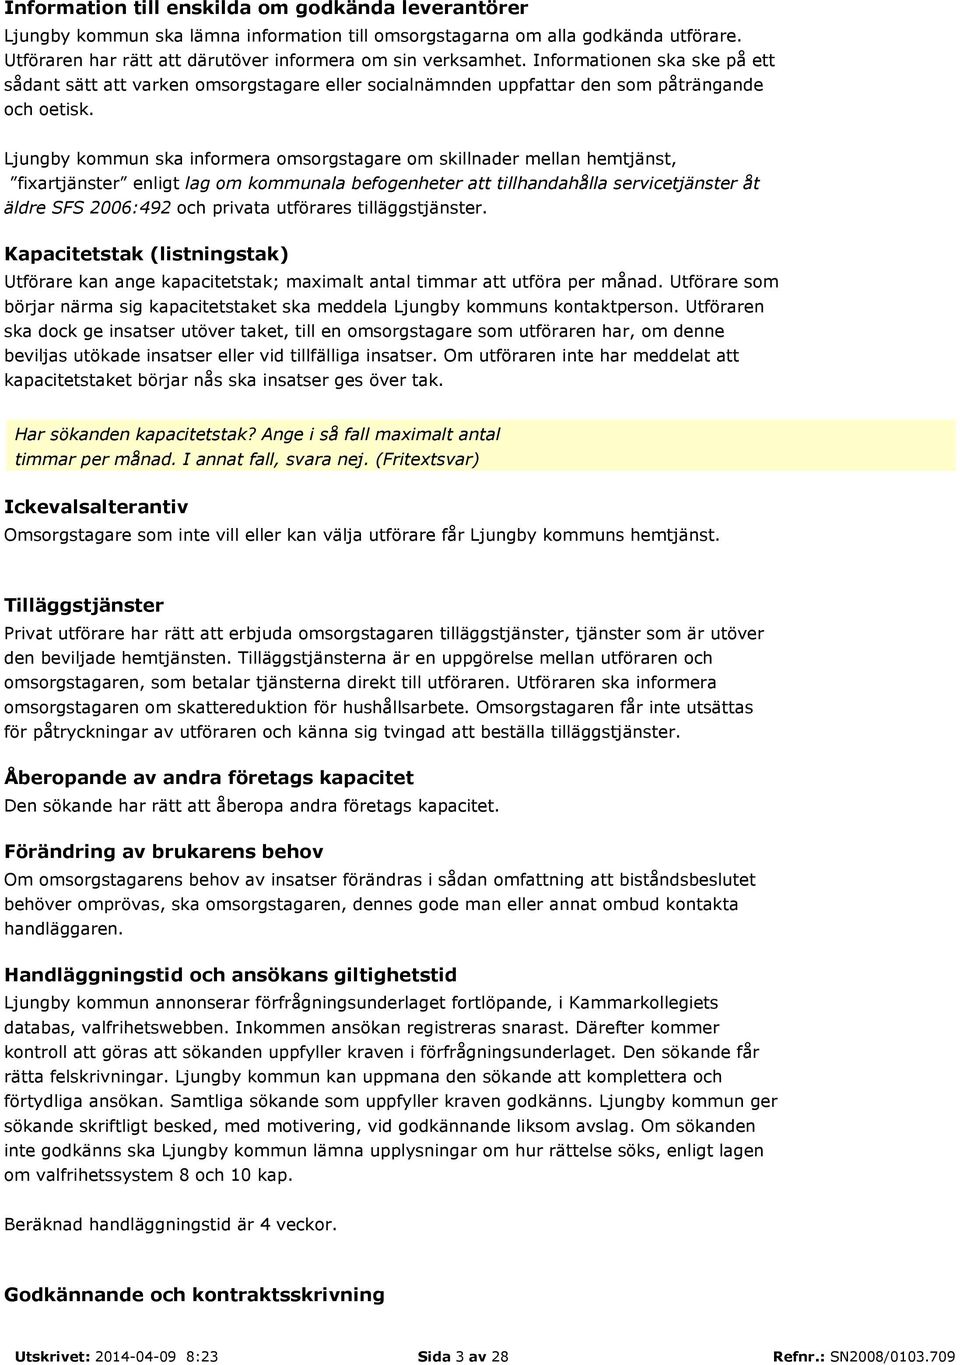 Ljungby kommun ska informera omsorgstagare om skillnader mellan hemtjänst, fixartjänster enligt lag om kommunala befogenheter att tillhandahålla servicetjänster åt äldre SFS 2006:492 och privata